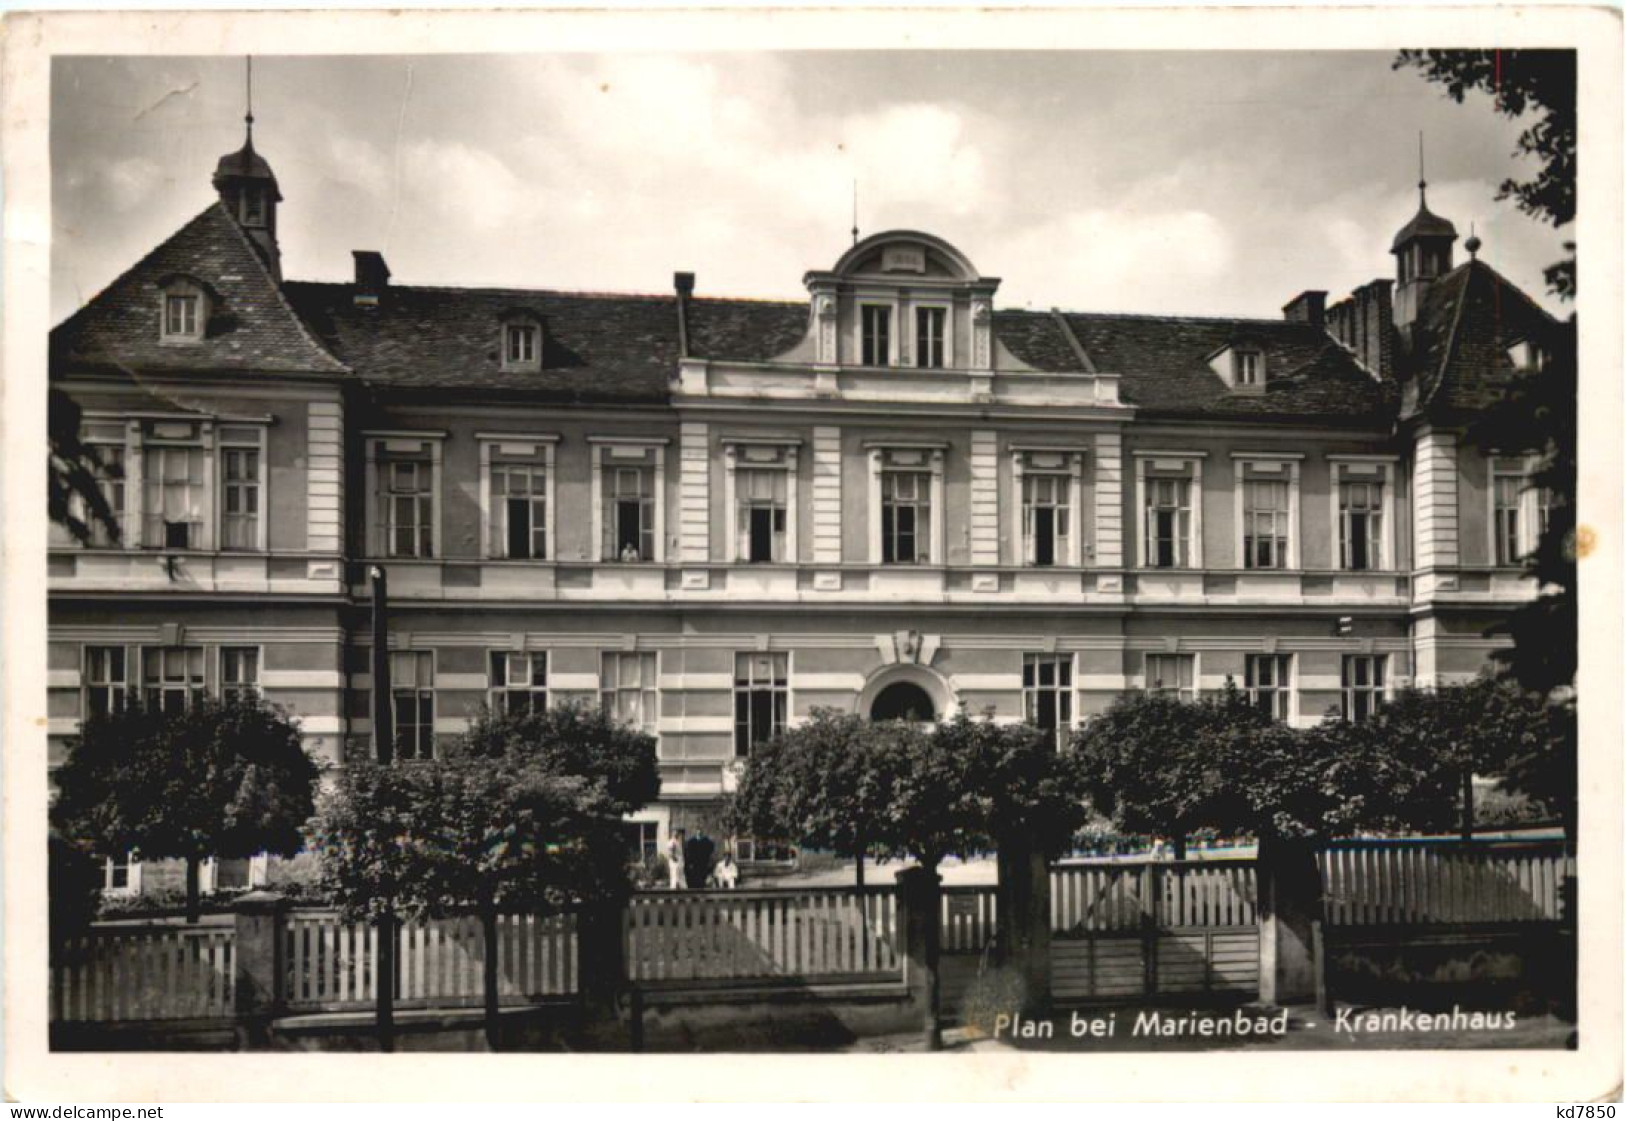 Plan Bei Marienbad - Krankenhaus - Böhmen Und Mähren